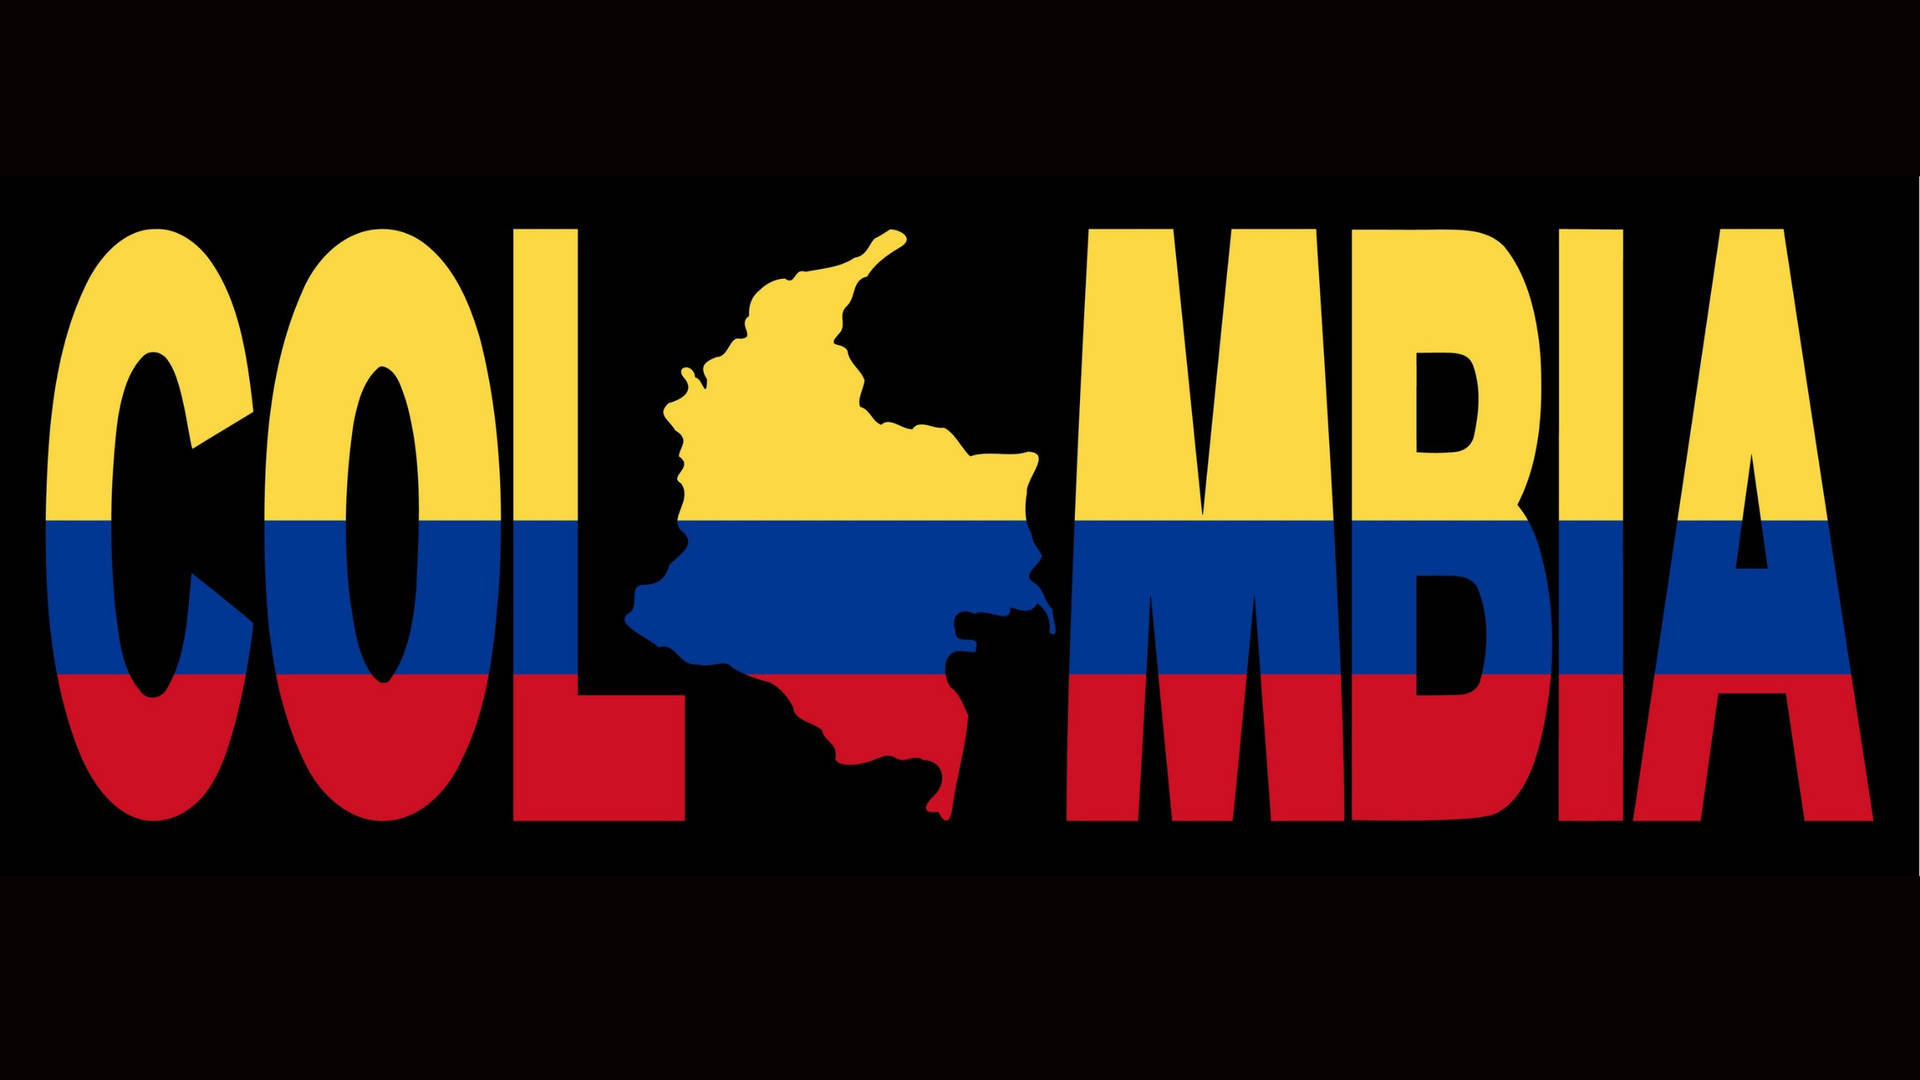 Banderay Mapa De Colombia. Fondo de pantalla